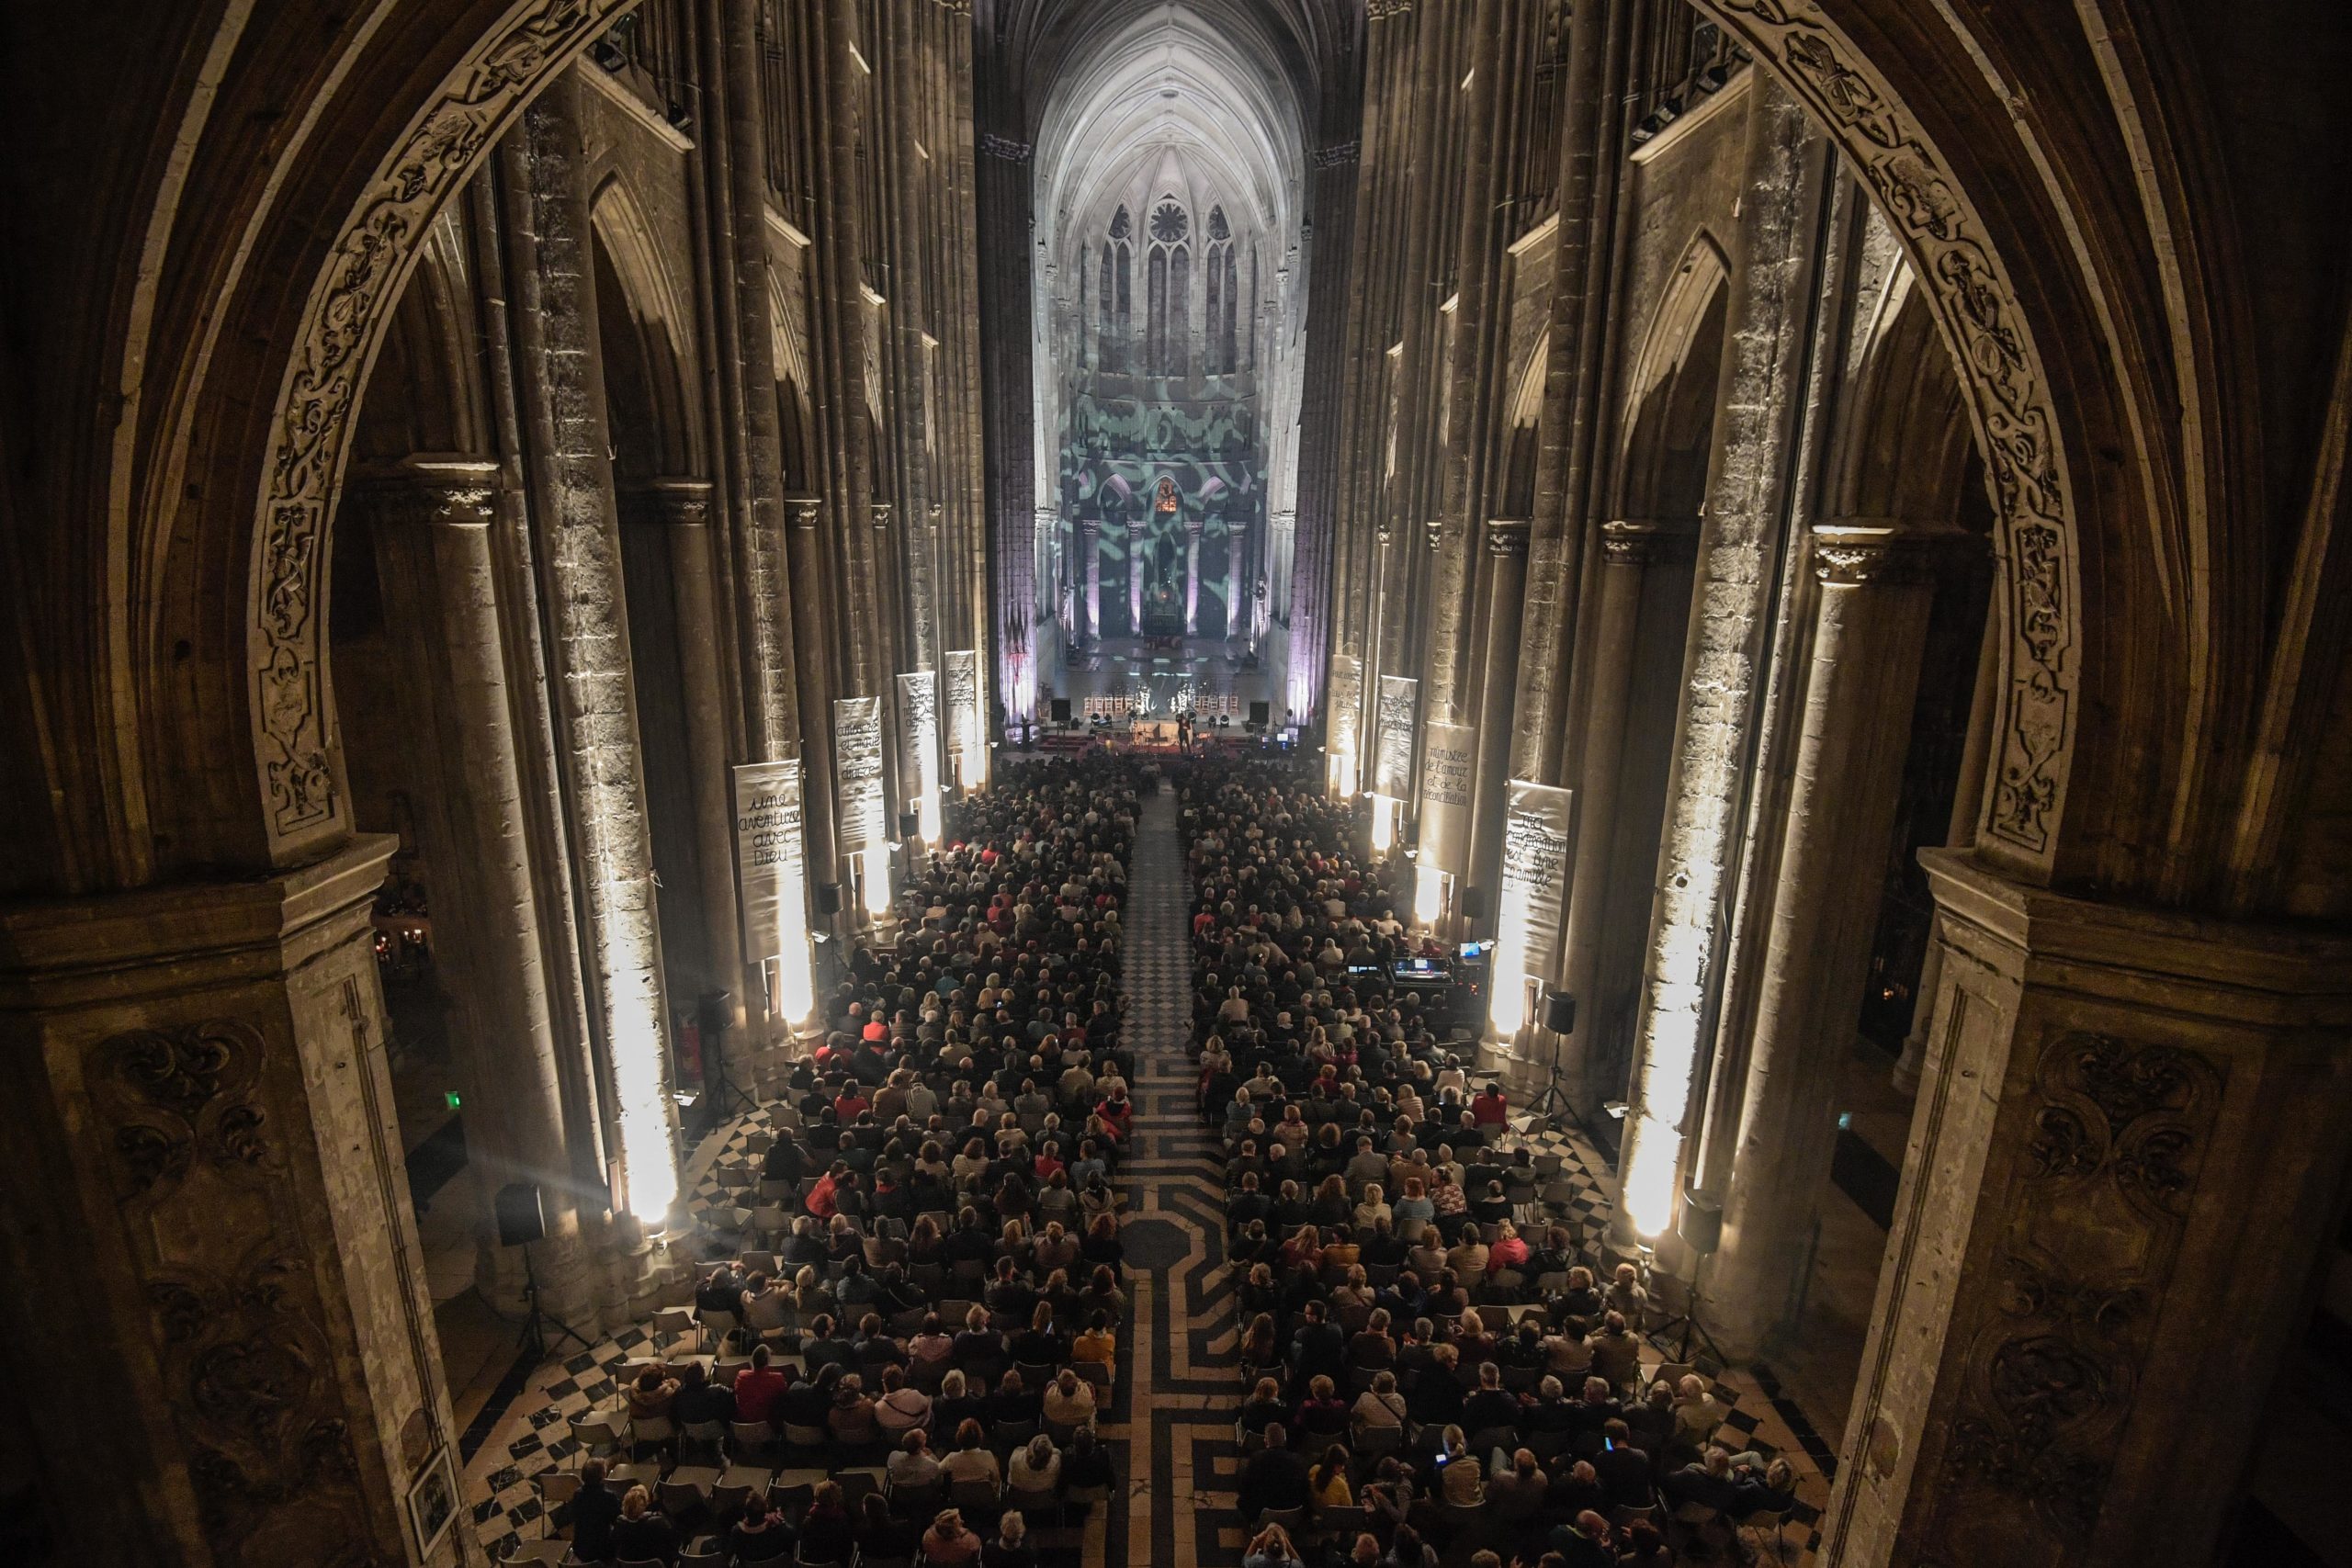 Concert de Laurent Voulzy dans une cathédrale.